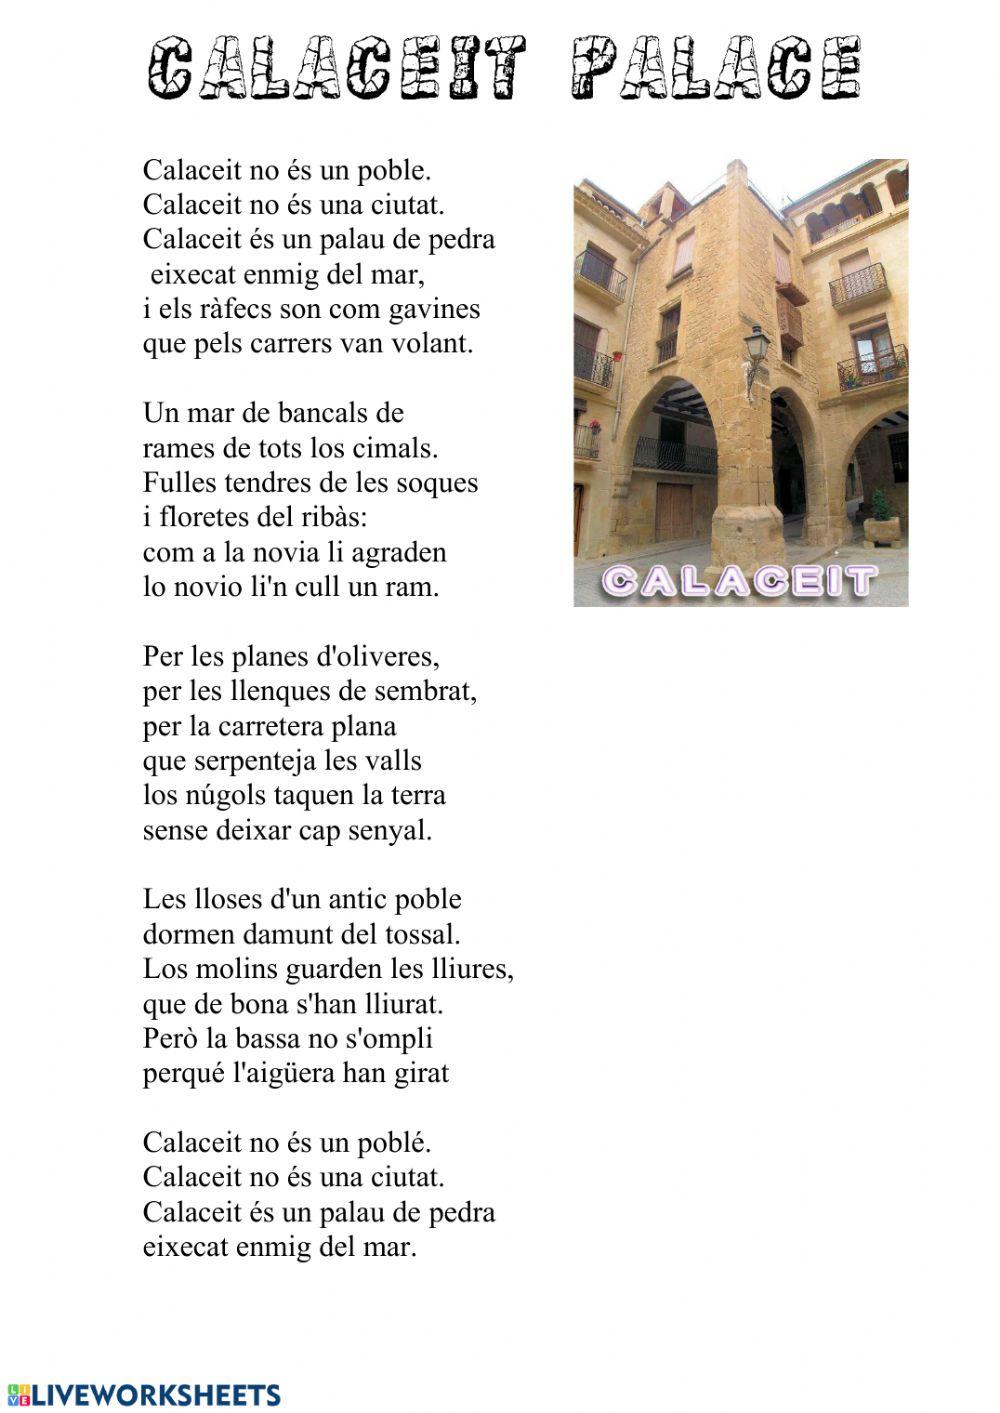 Calaceit palace